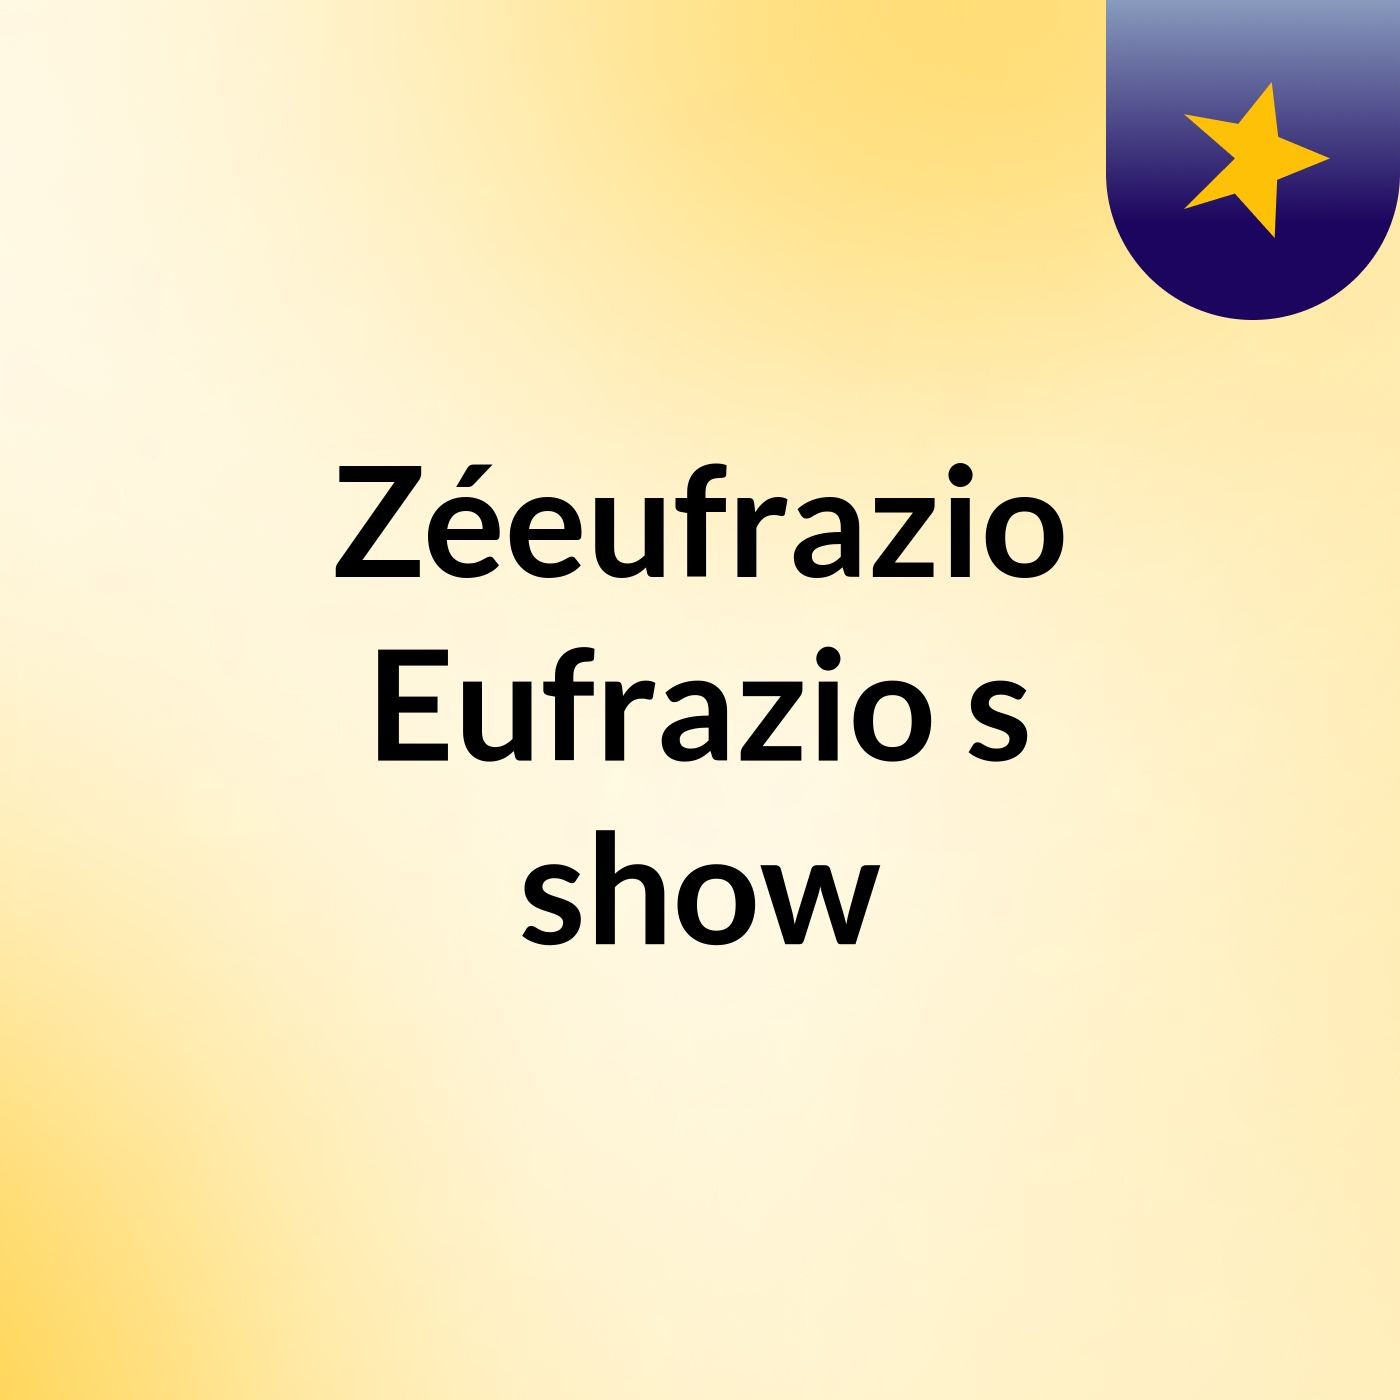 Zéeufrazio Eufrazio's show